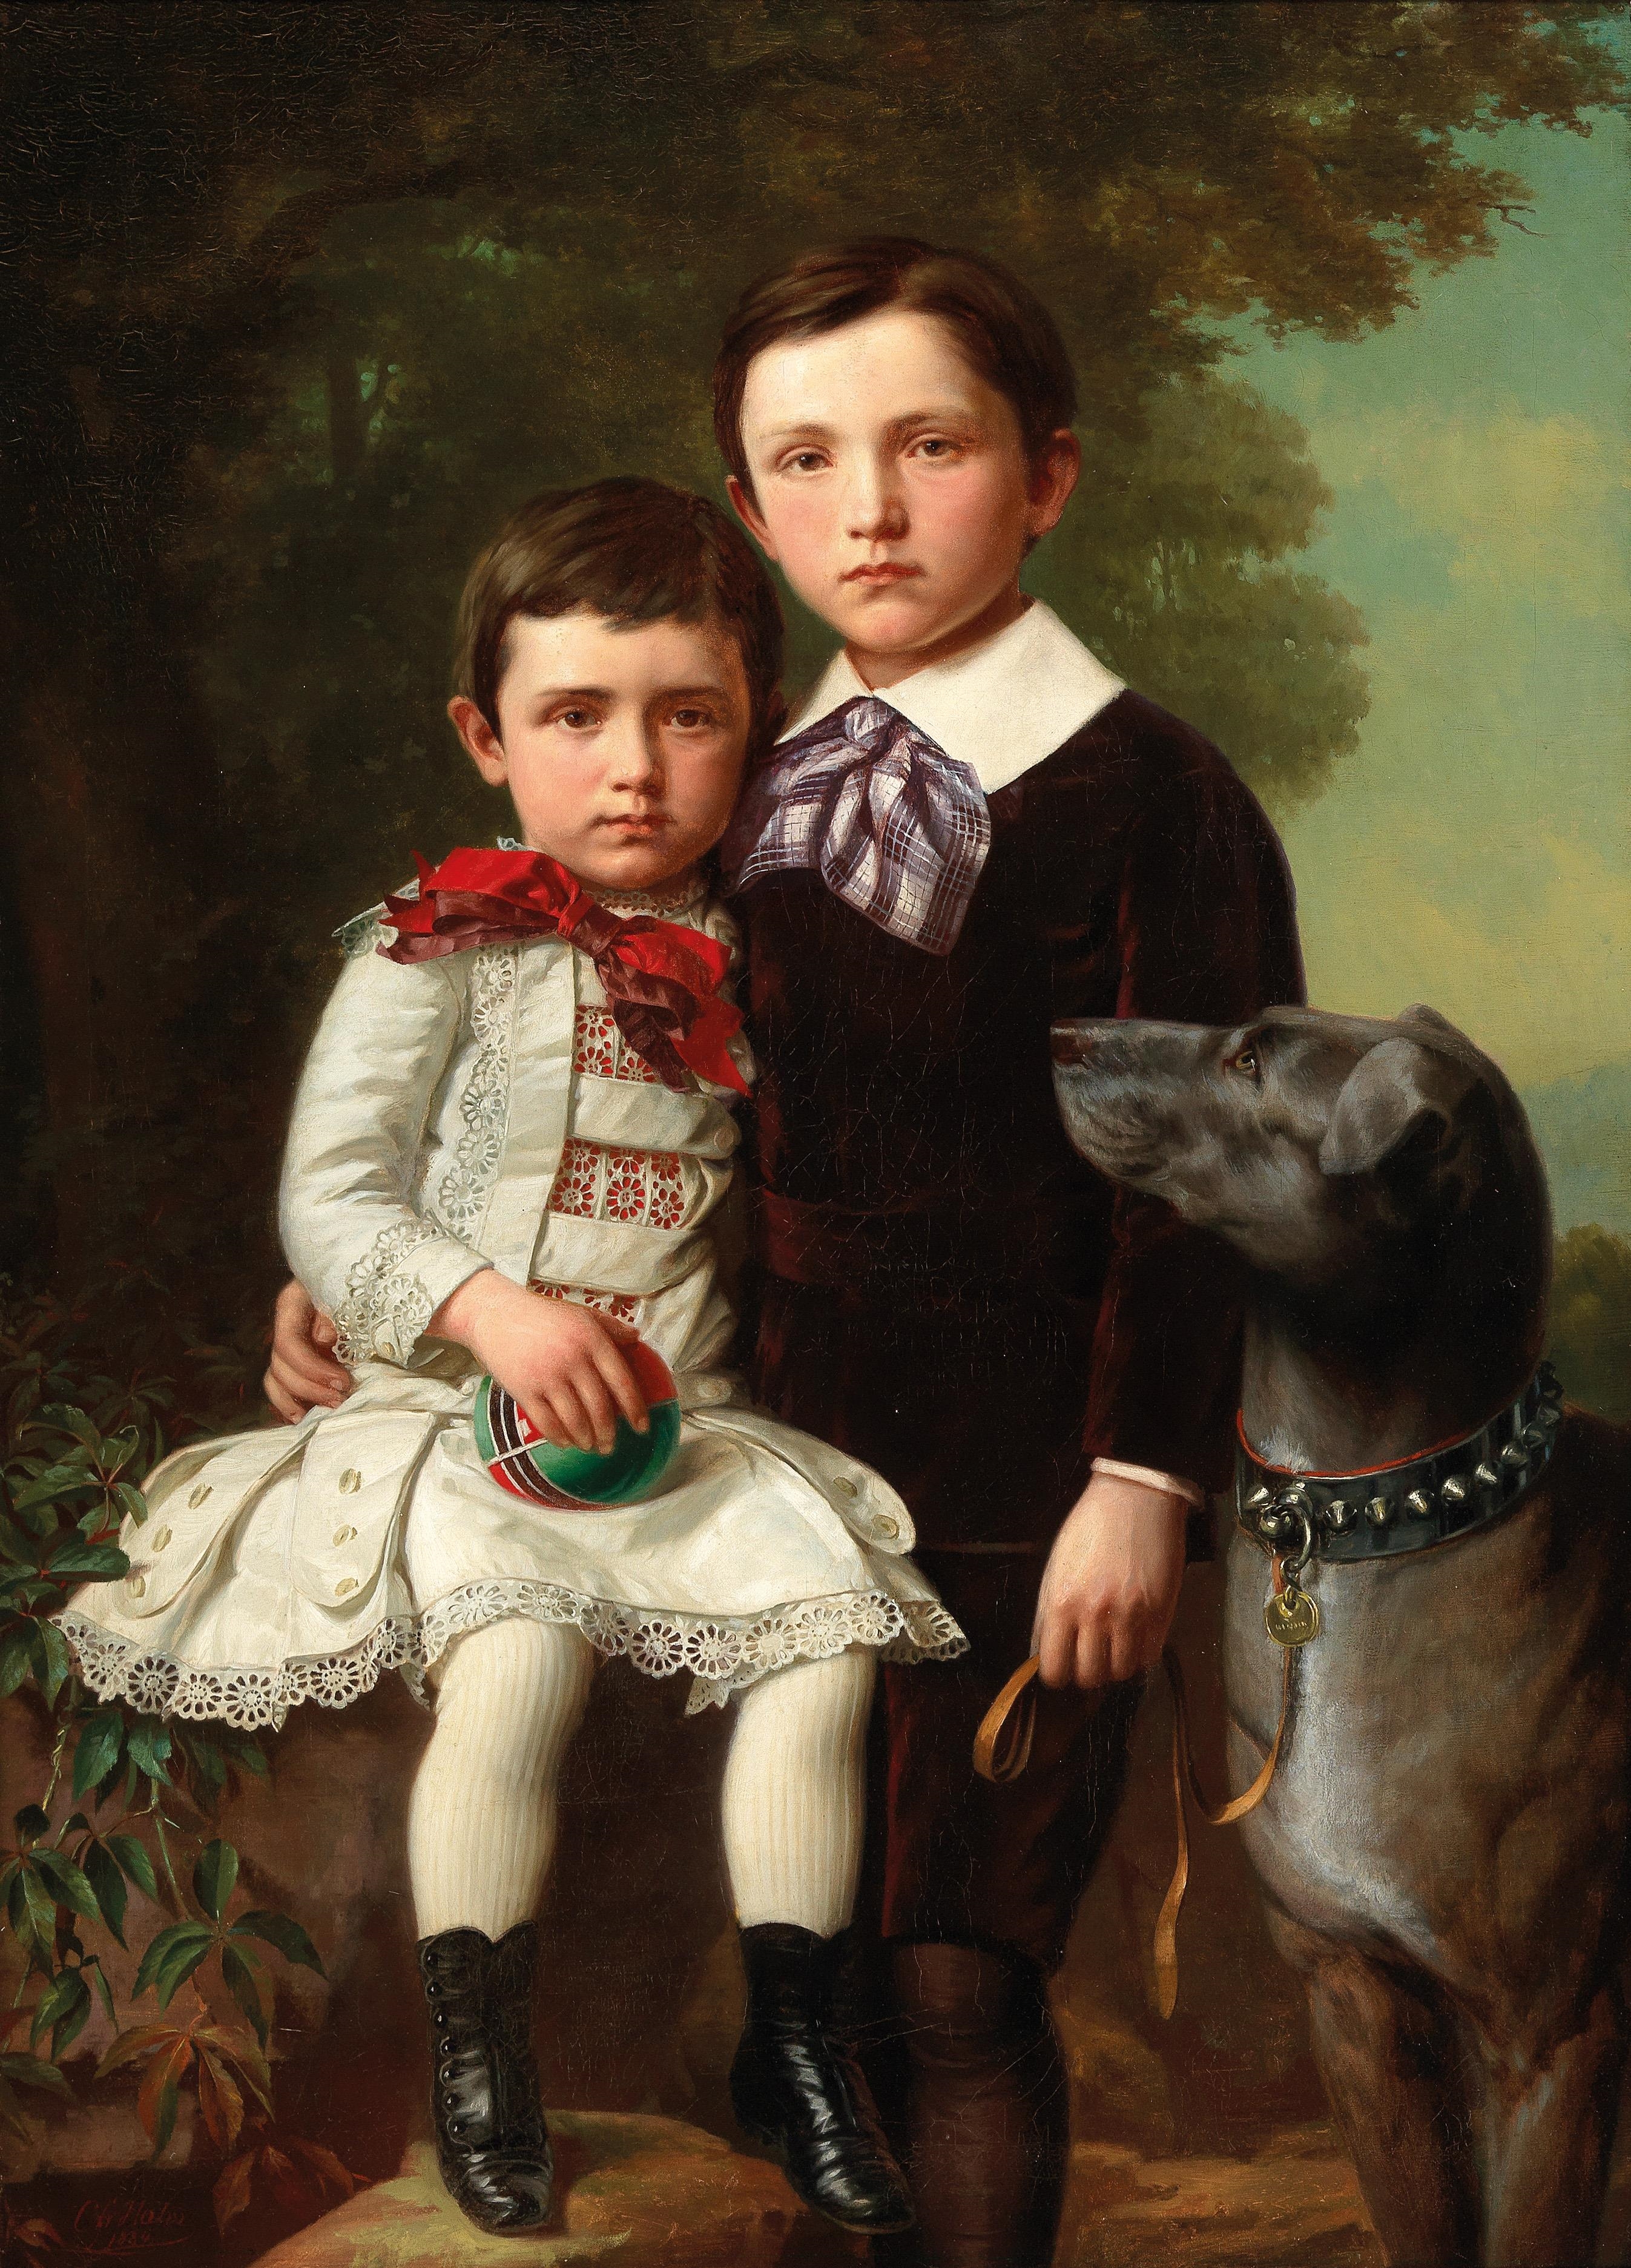 Мальчик 18 века. Семейный портрет. Старинный портрет семьи. Семейный портрет живопись 19 век.